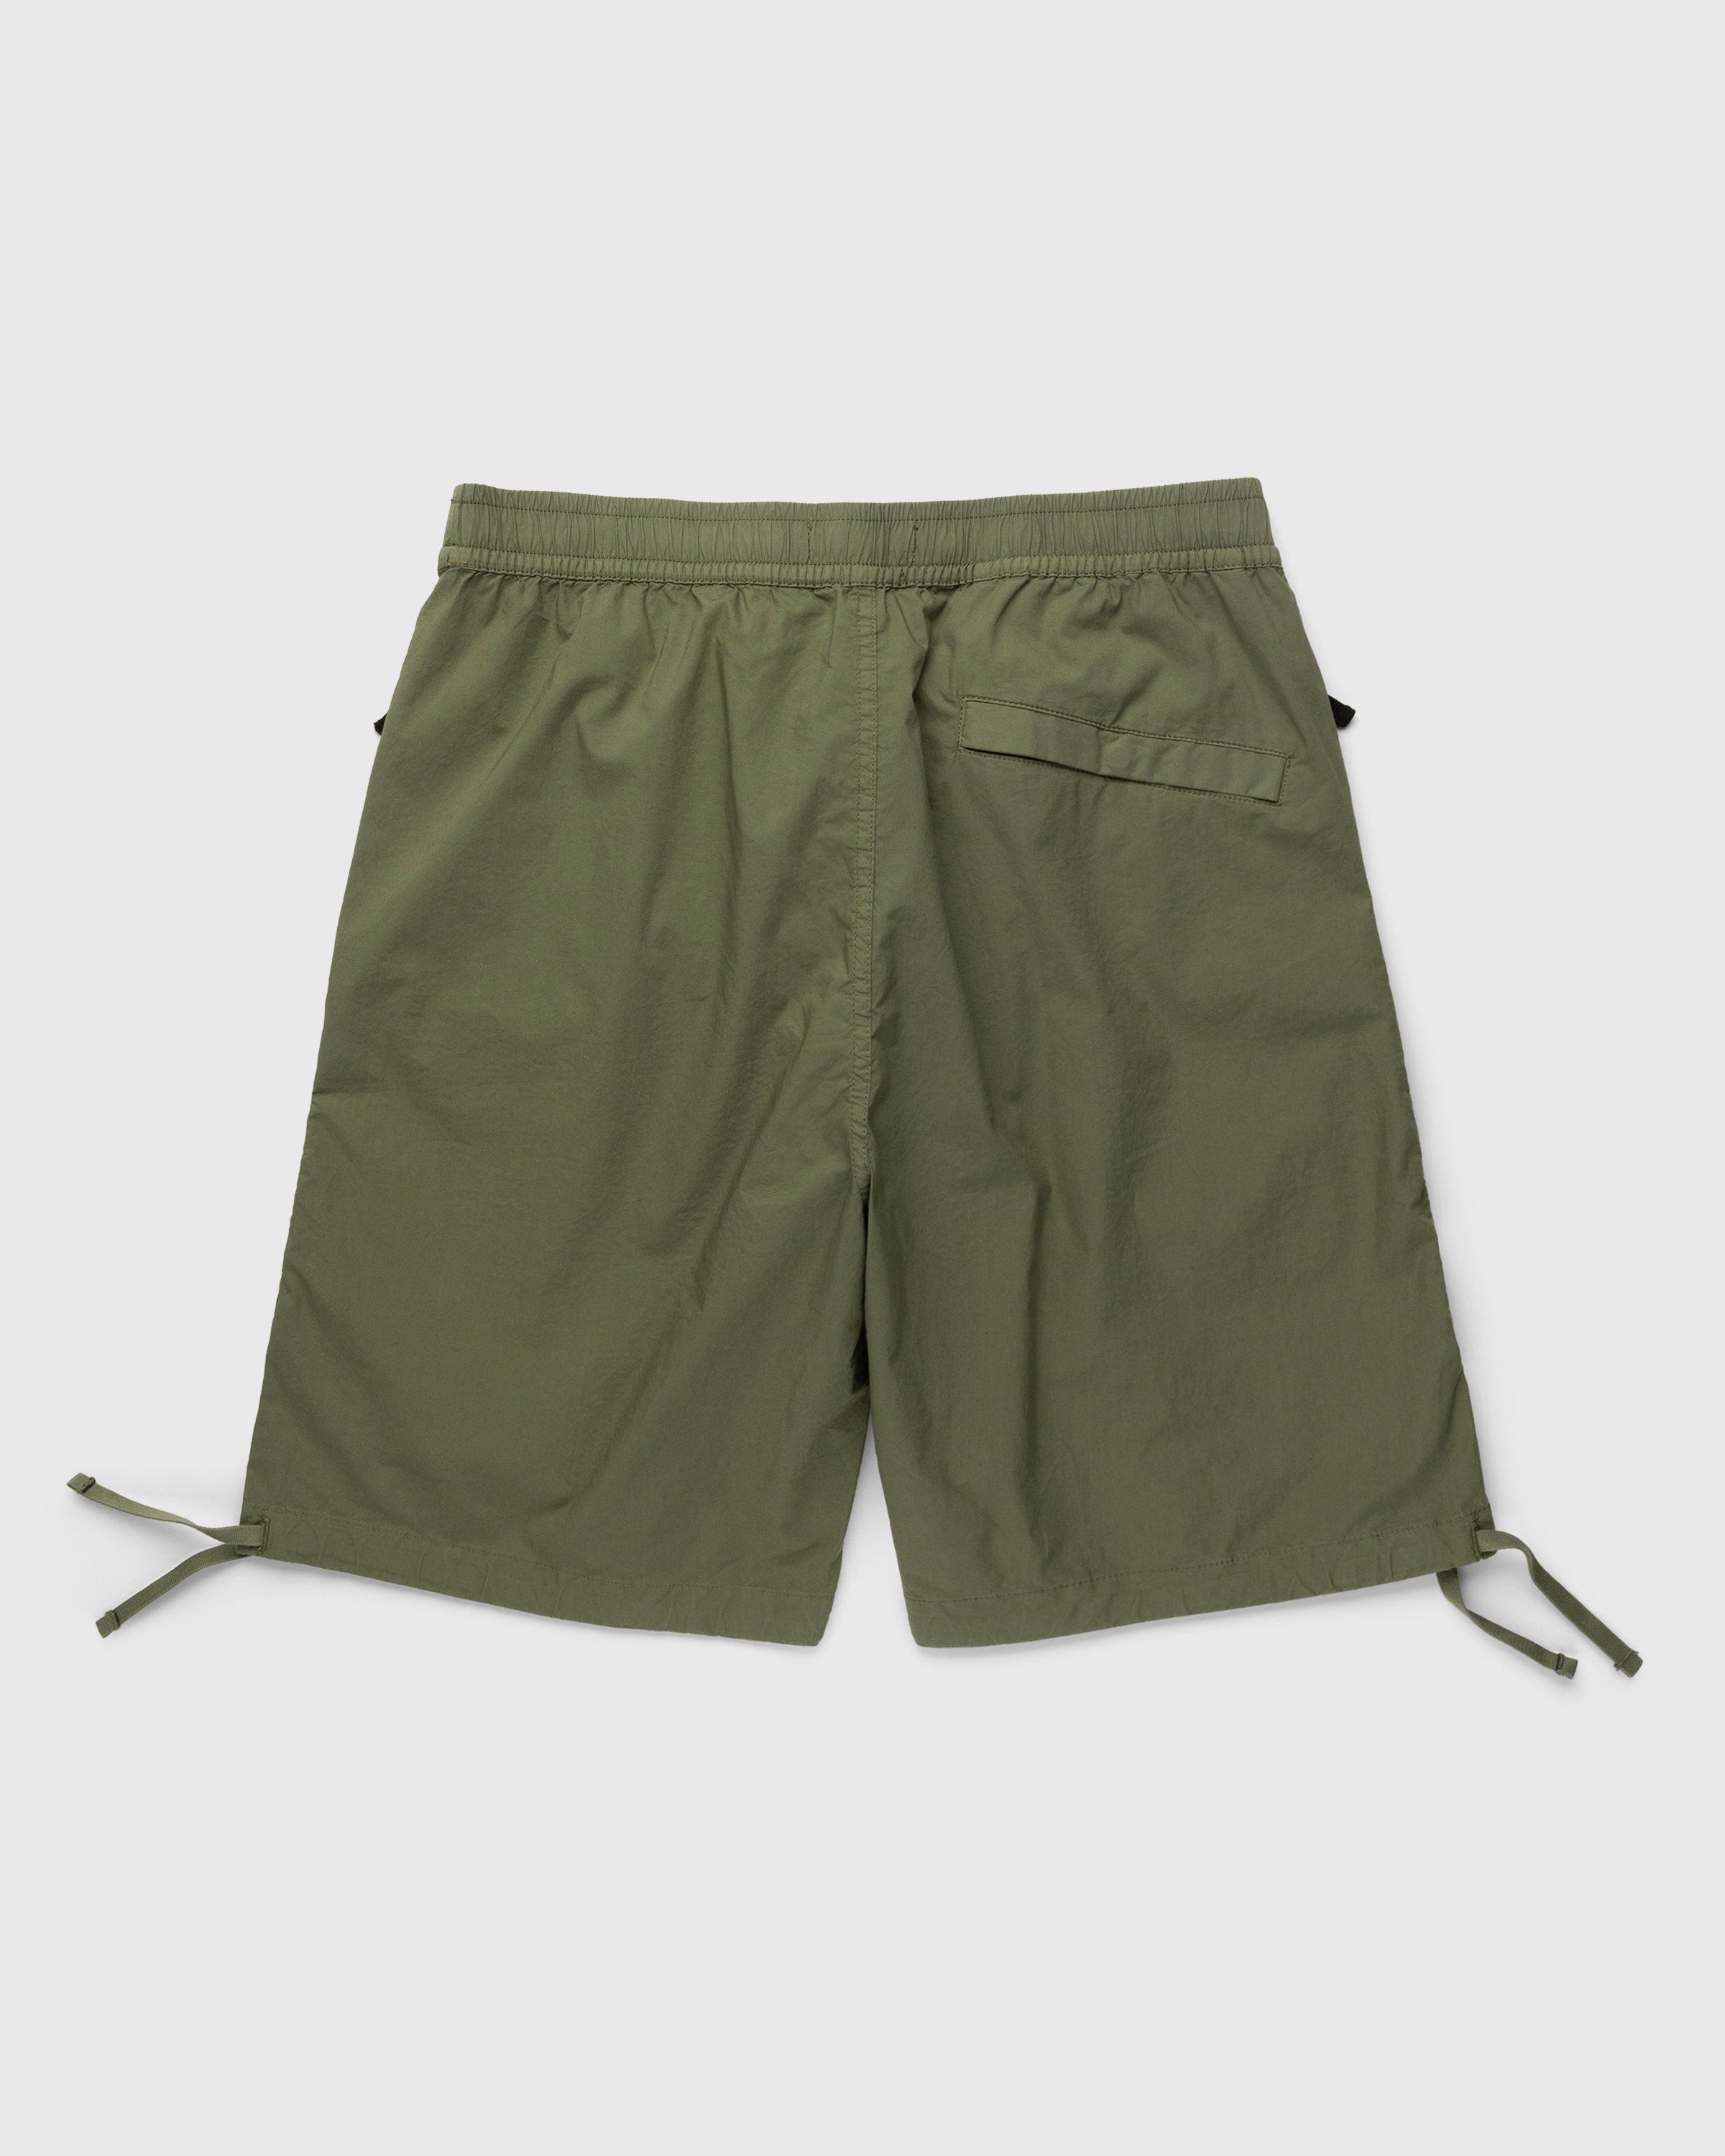 Stone Island - L0703 Bermuda Shorts Olive - Clothing - Green - Image 2